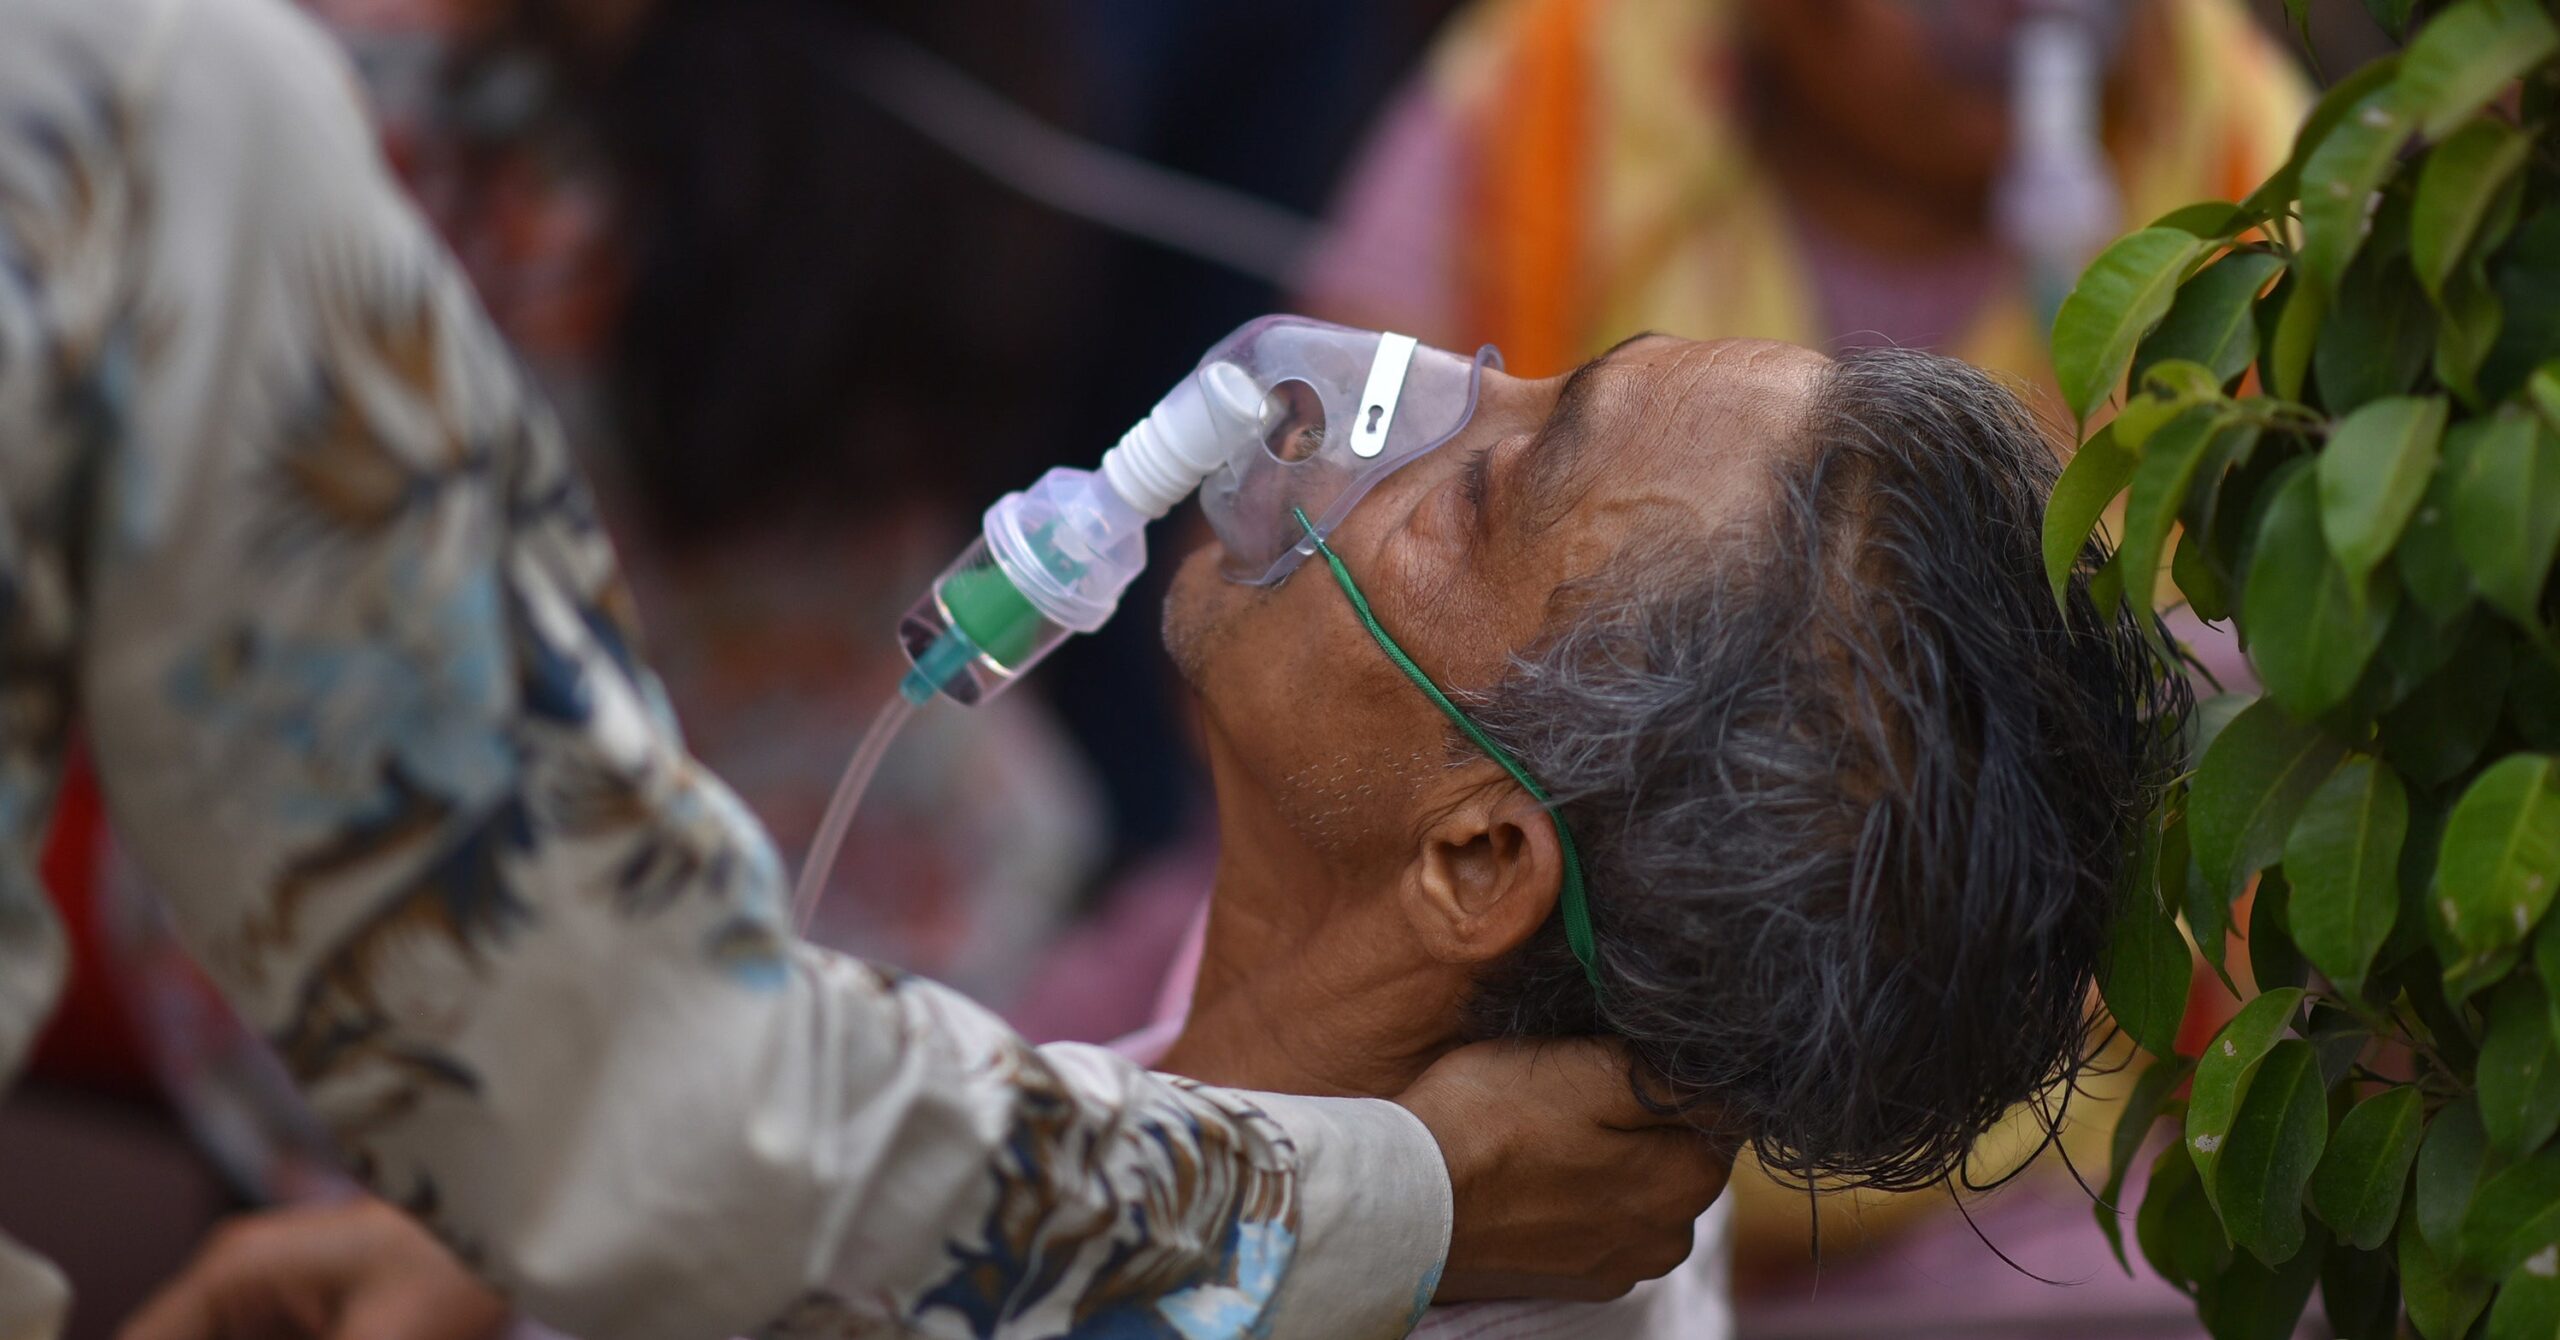 Ces photos horribles montrent à quel point la flambée de coronavirus en Inde est grave